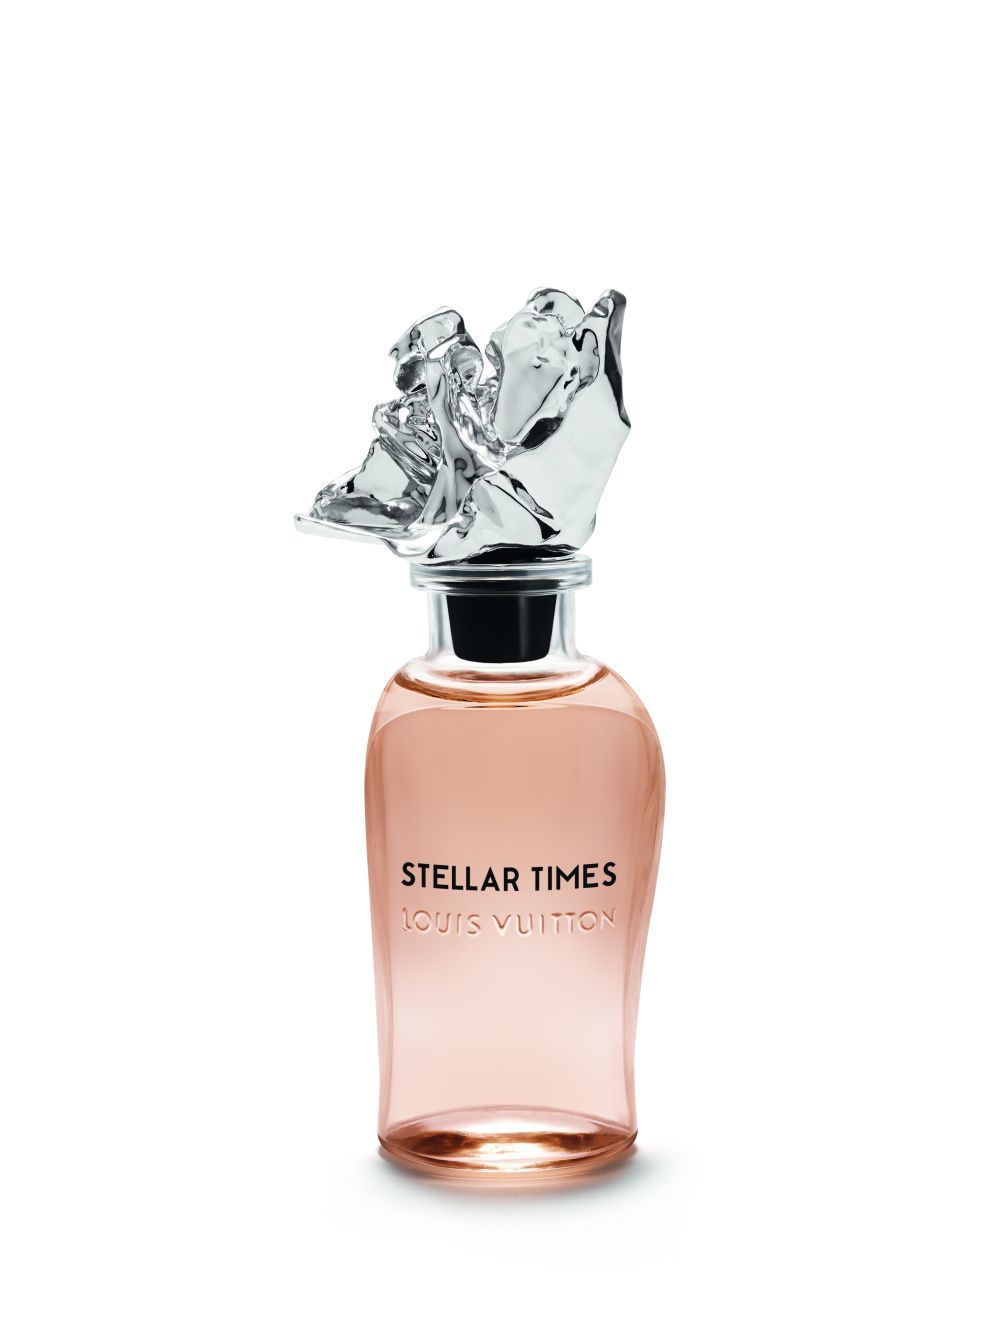 Extracto de perfume Stellar Times de Louis Vuitton.